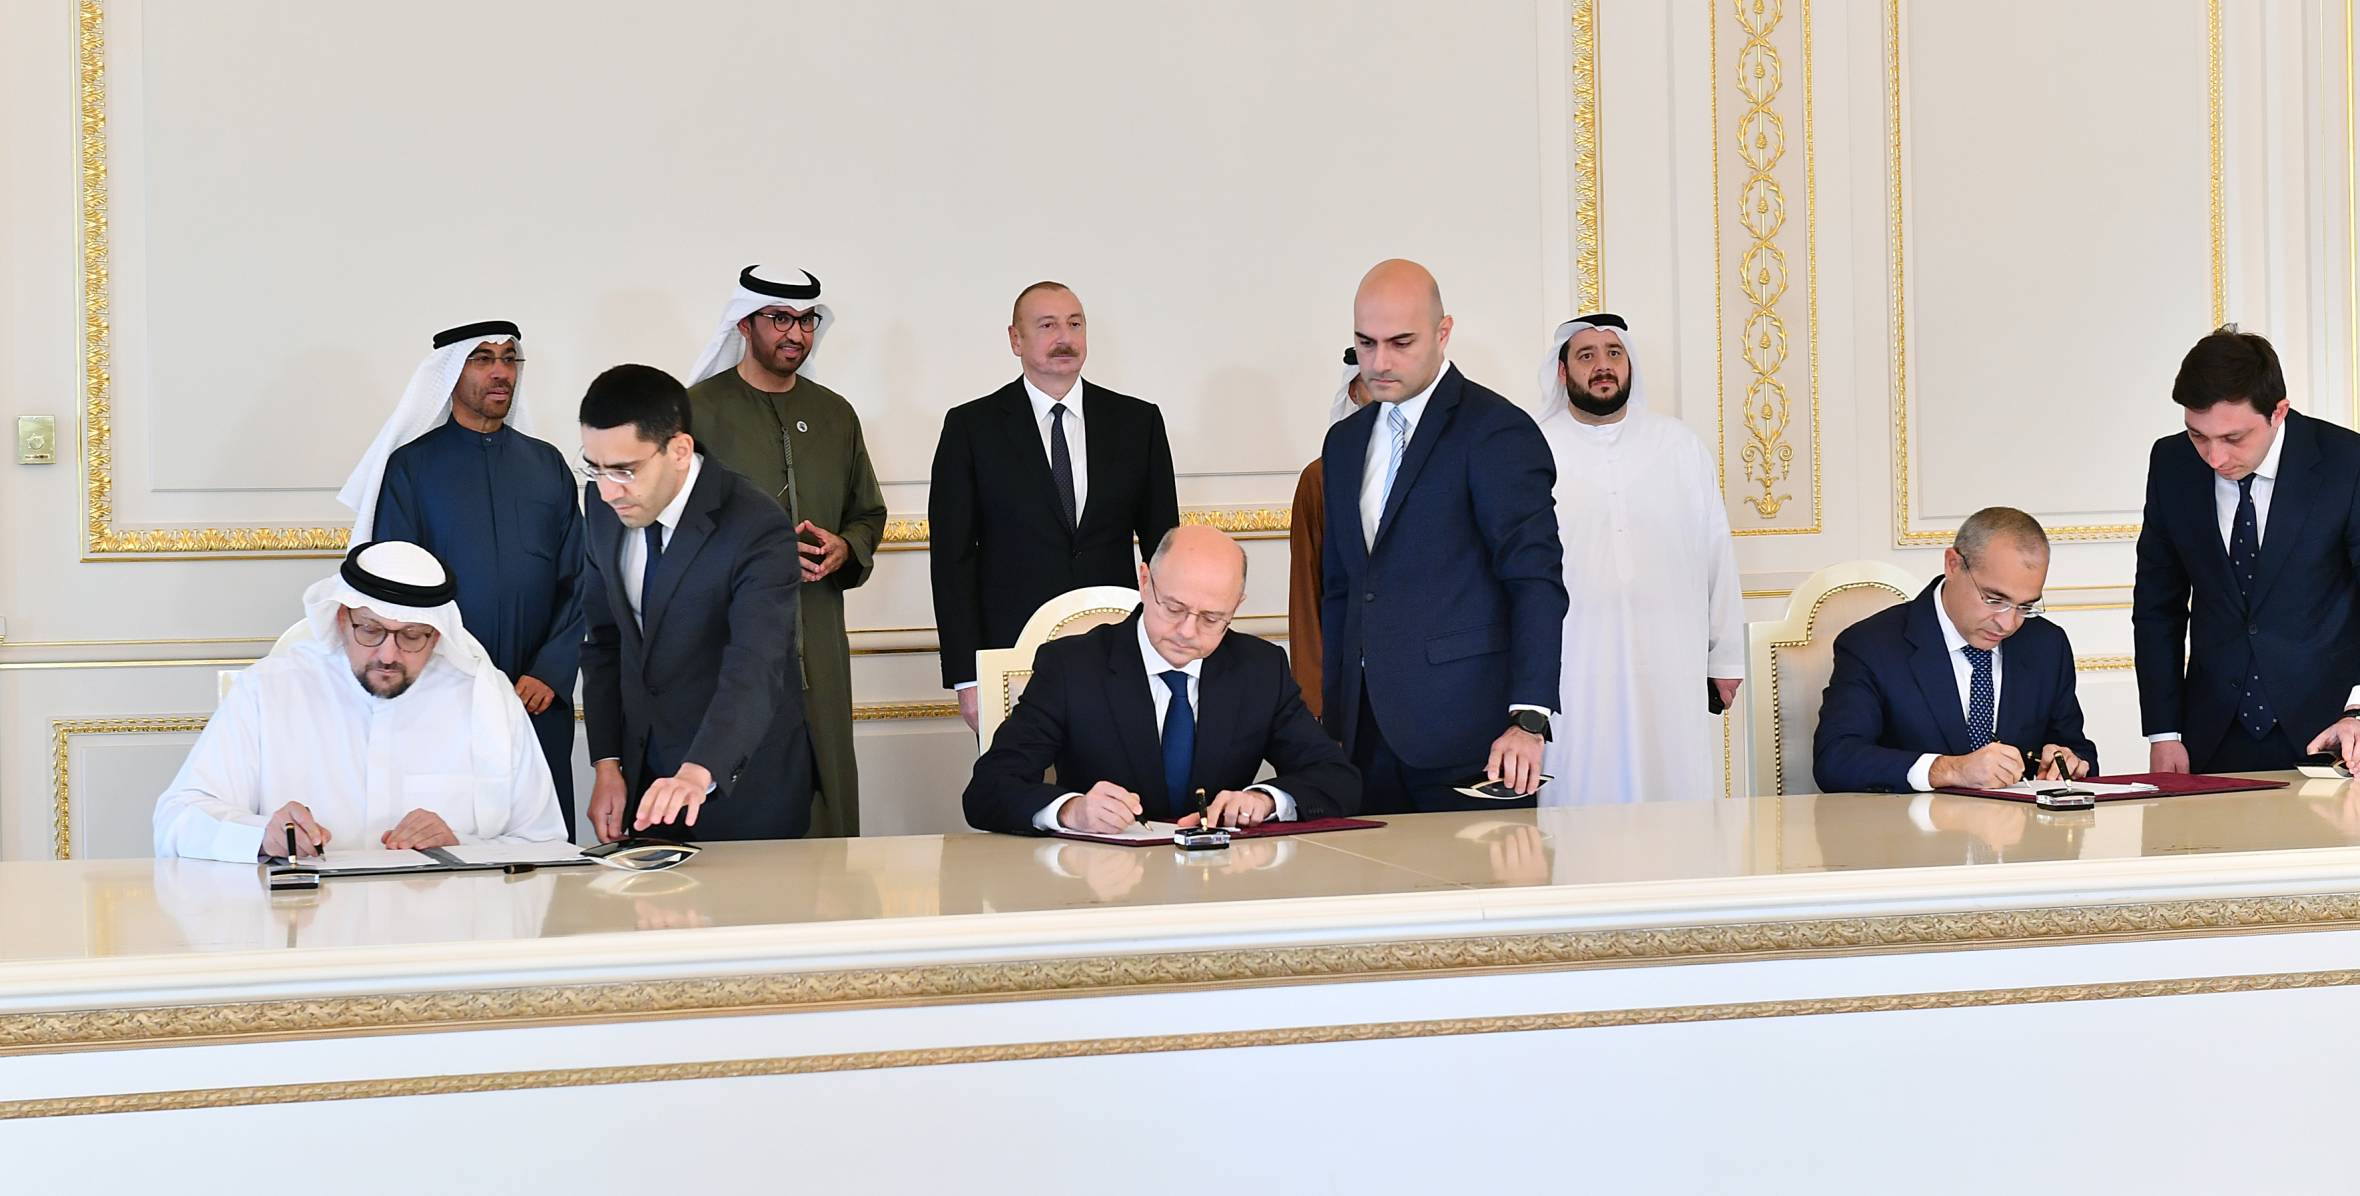 Подписаны документы между Правительством Азербайджана и компанией Masdar Объединенных Арабских Эмиратов